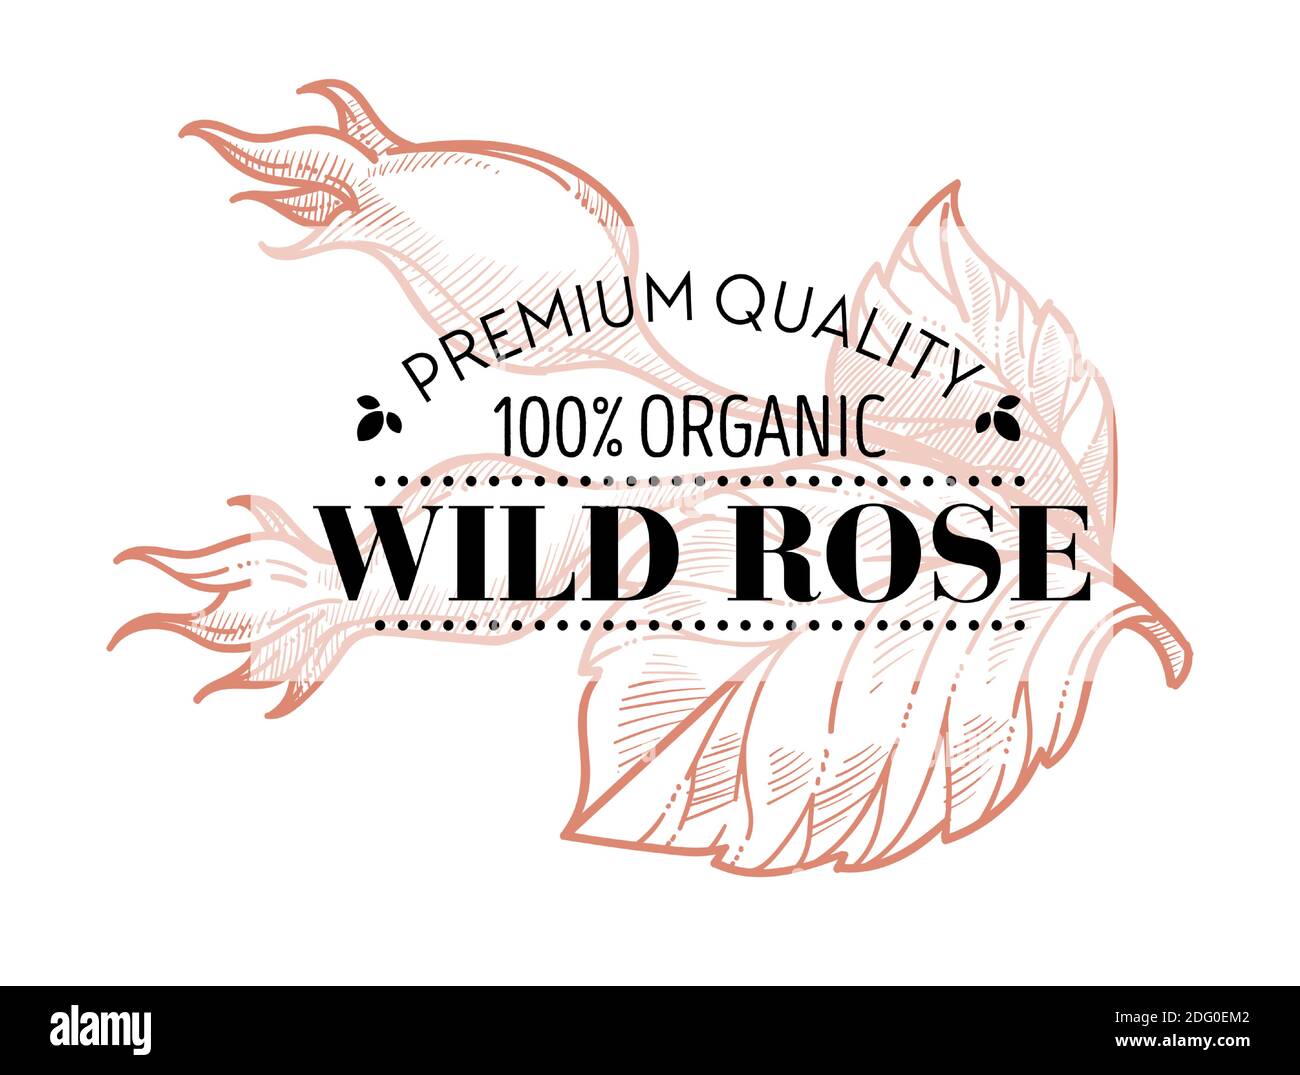 Rose sauvage de qualité supérieure 100% biologique Illustration de Vecteur